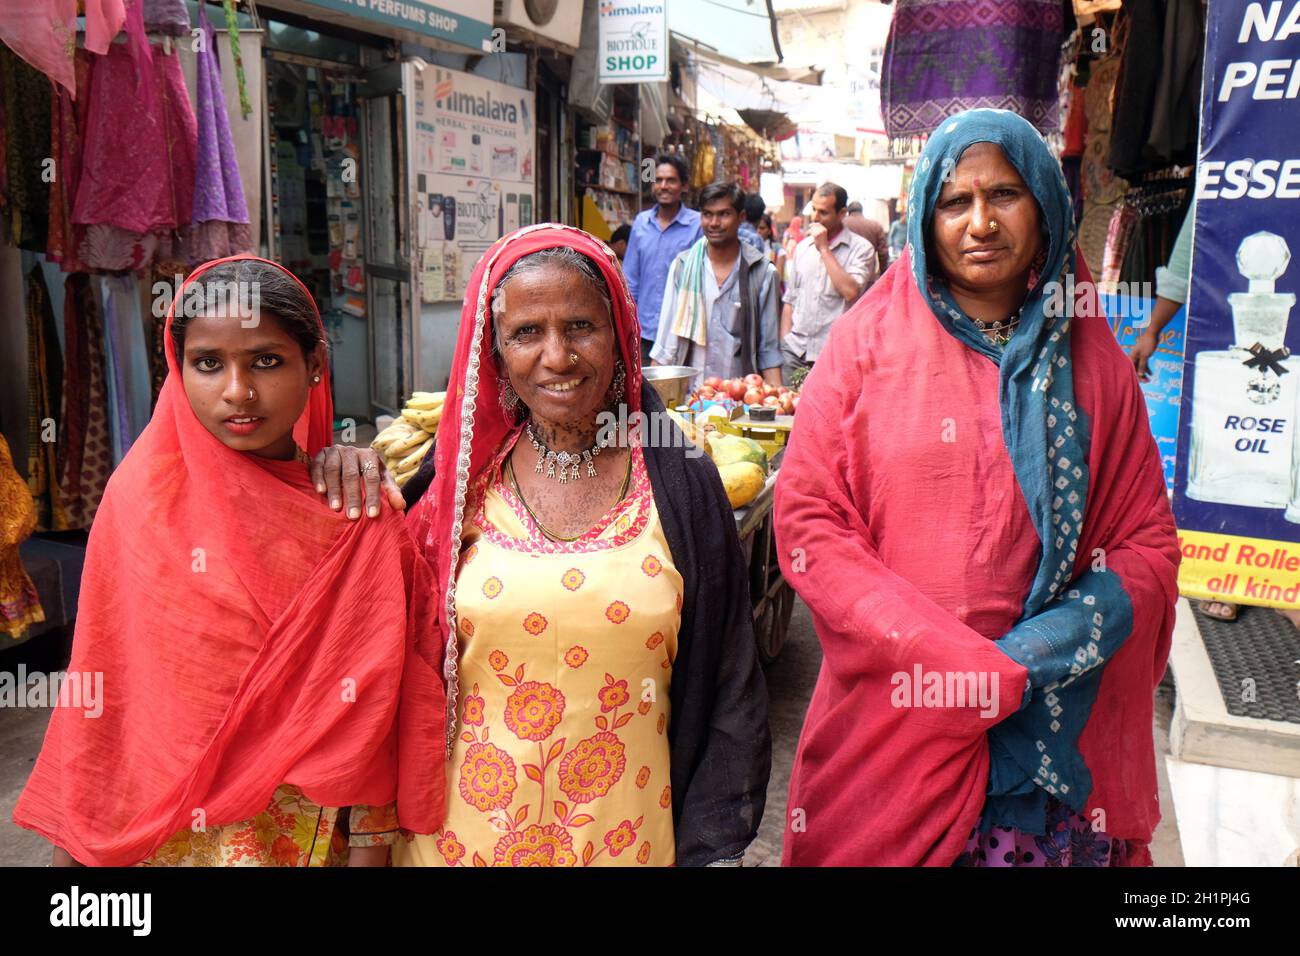 Drei indische Frauen mit bunten Schleier, Sari und eine Nase Schmuck posiert auf der Straße von Pushkar, Rajasthan, Indien Stockfoto